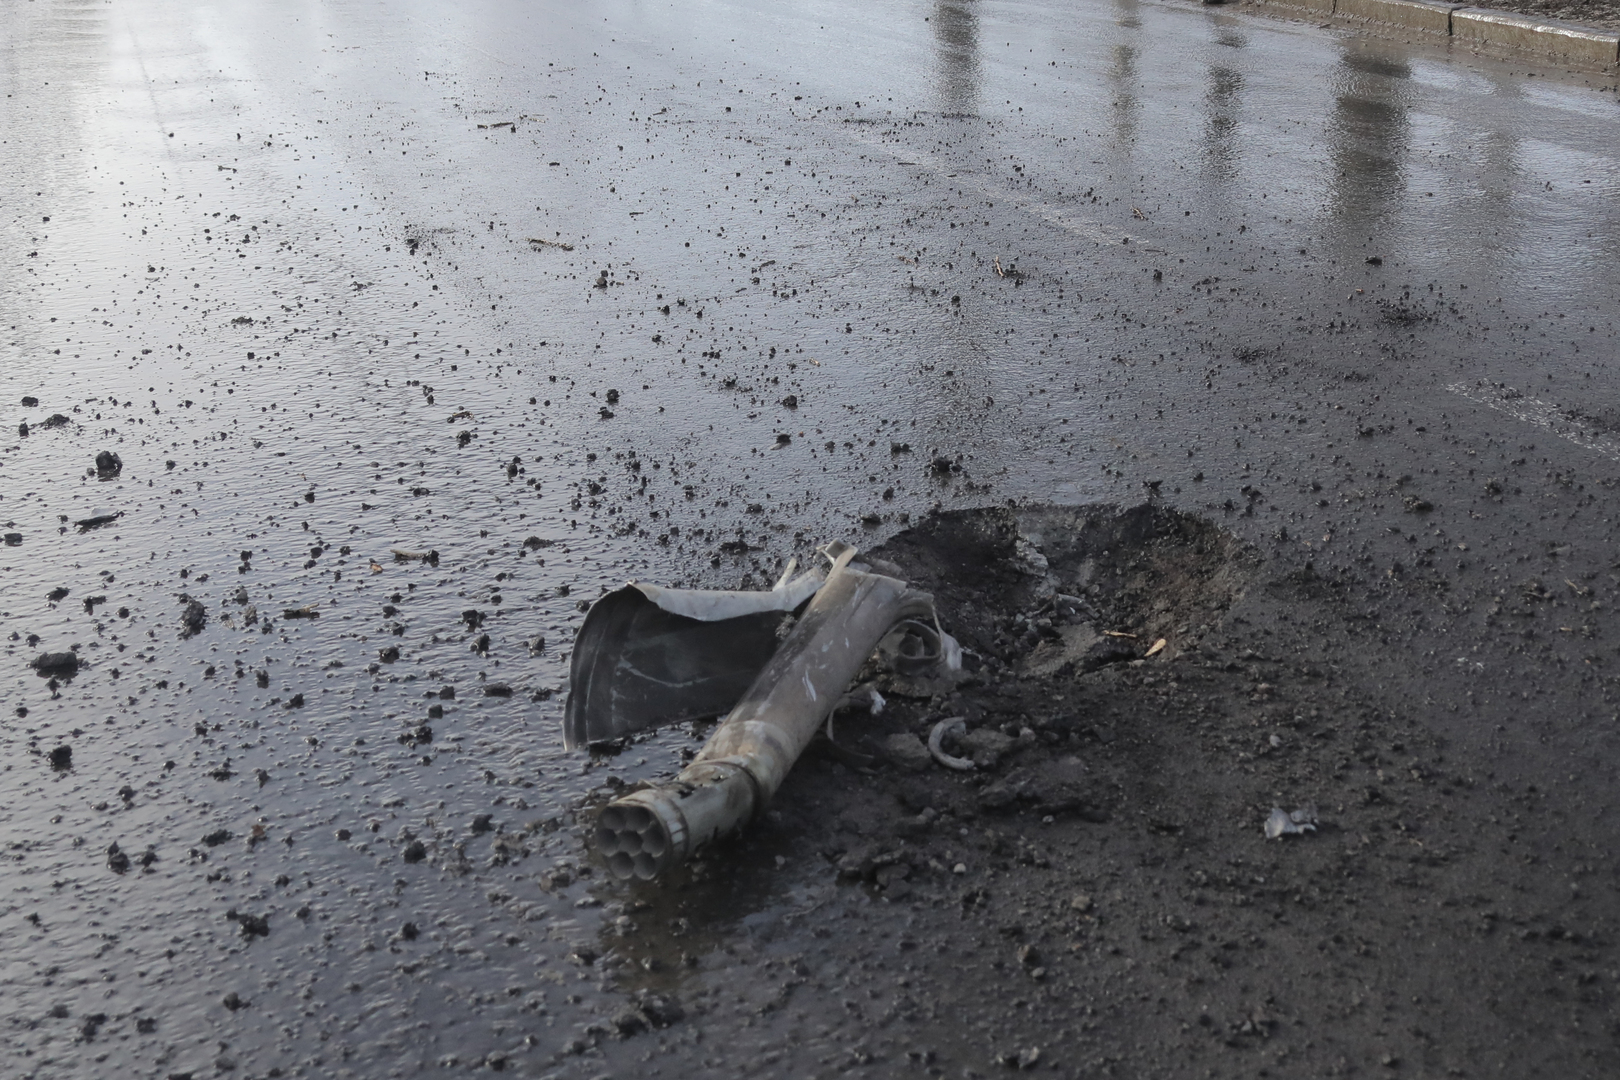 بوشيلين: مقتل 4 أشخاص وإصابة 13 آخرين في قصف أوكراني لدونيتسك